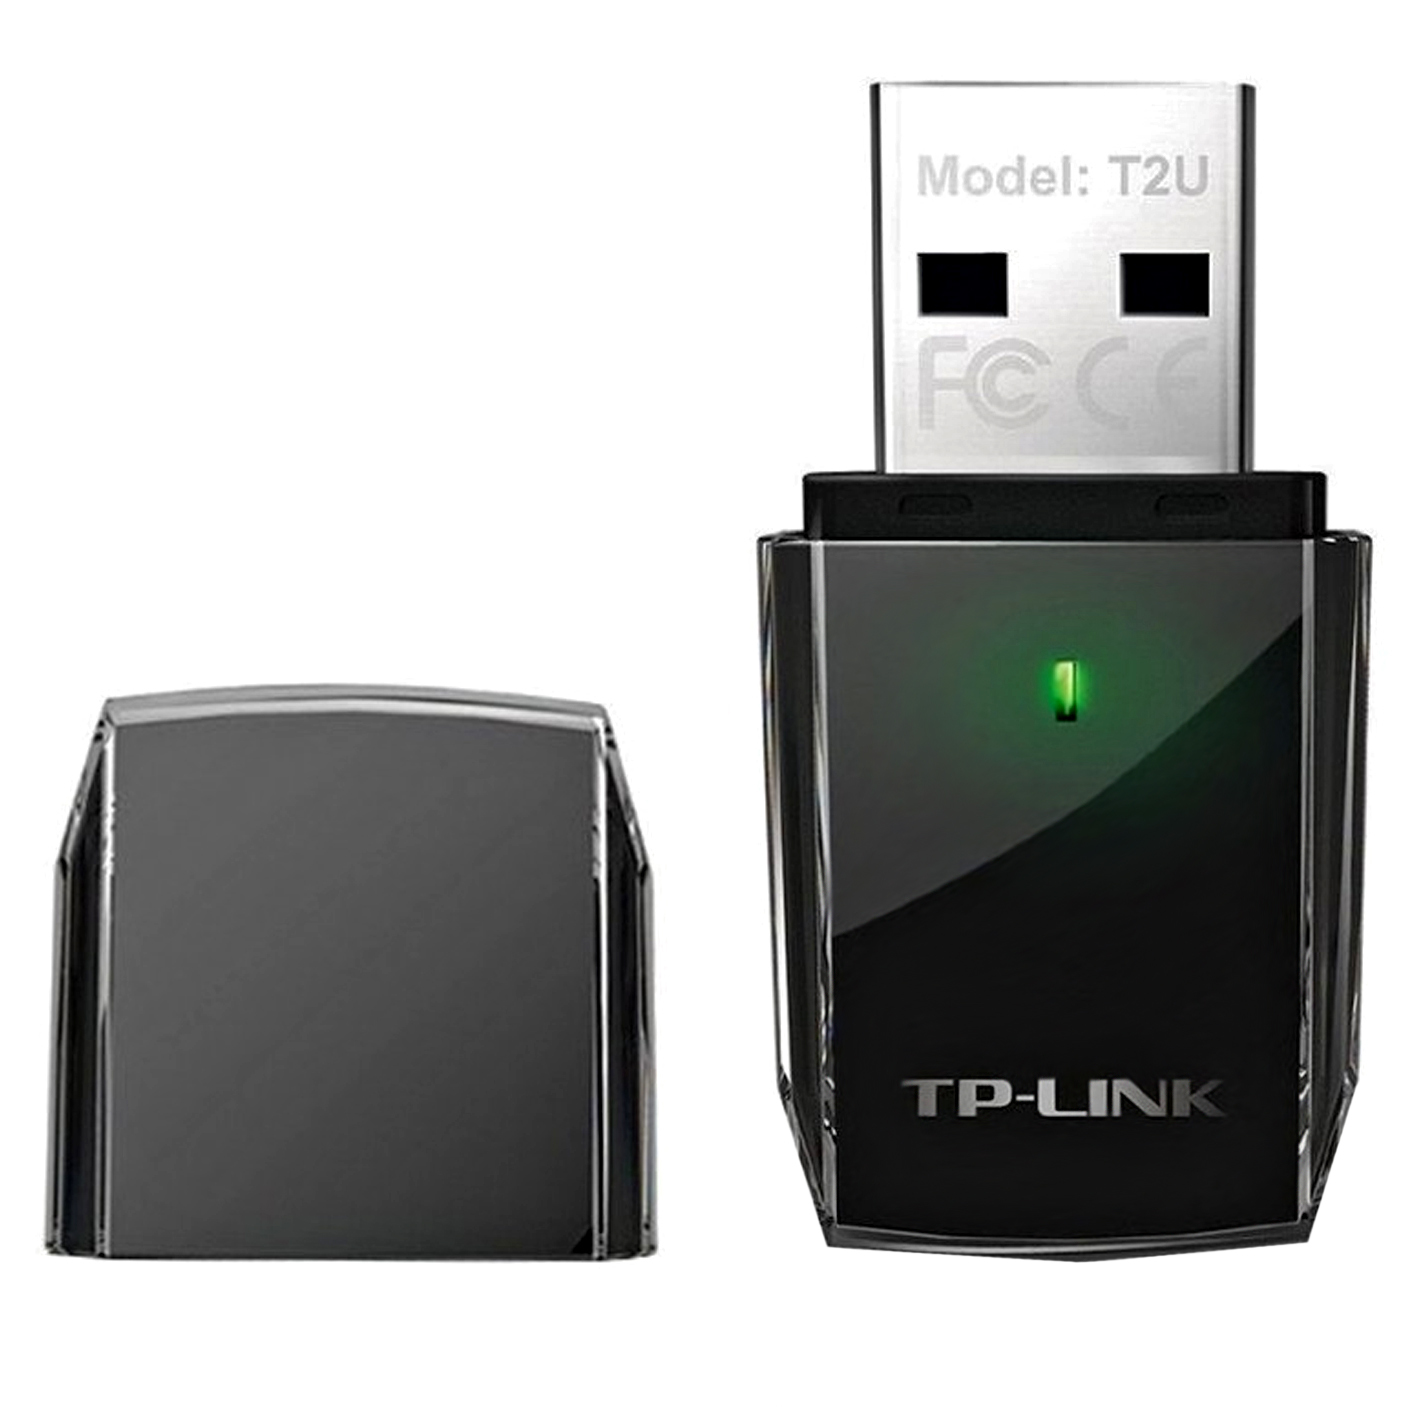 Draadloos Netwerk TP-LINK ARCHER T2U Dual Band wifi usb stik